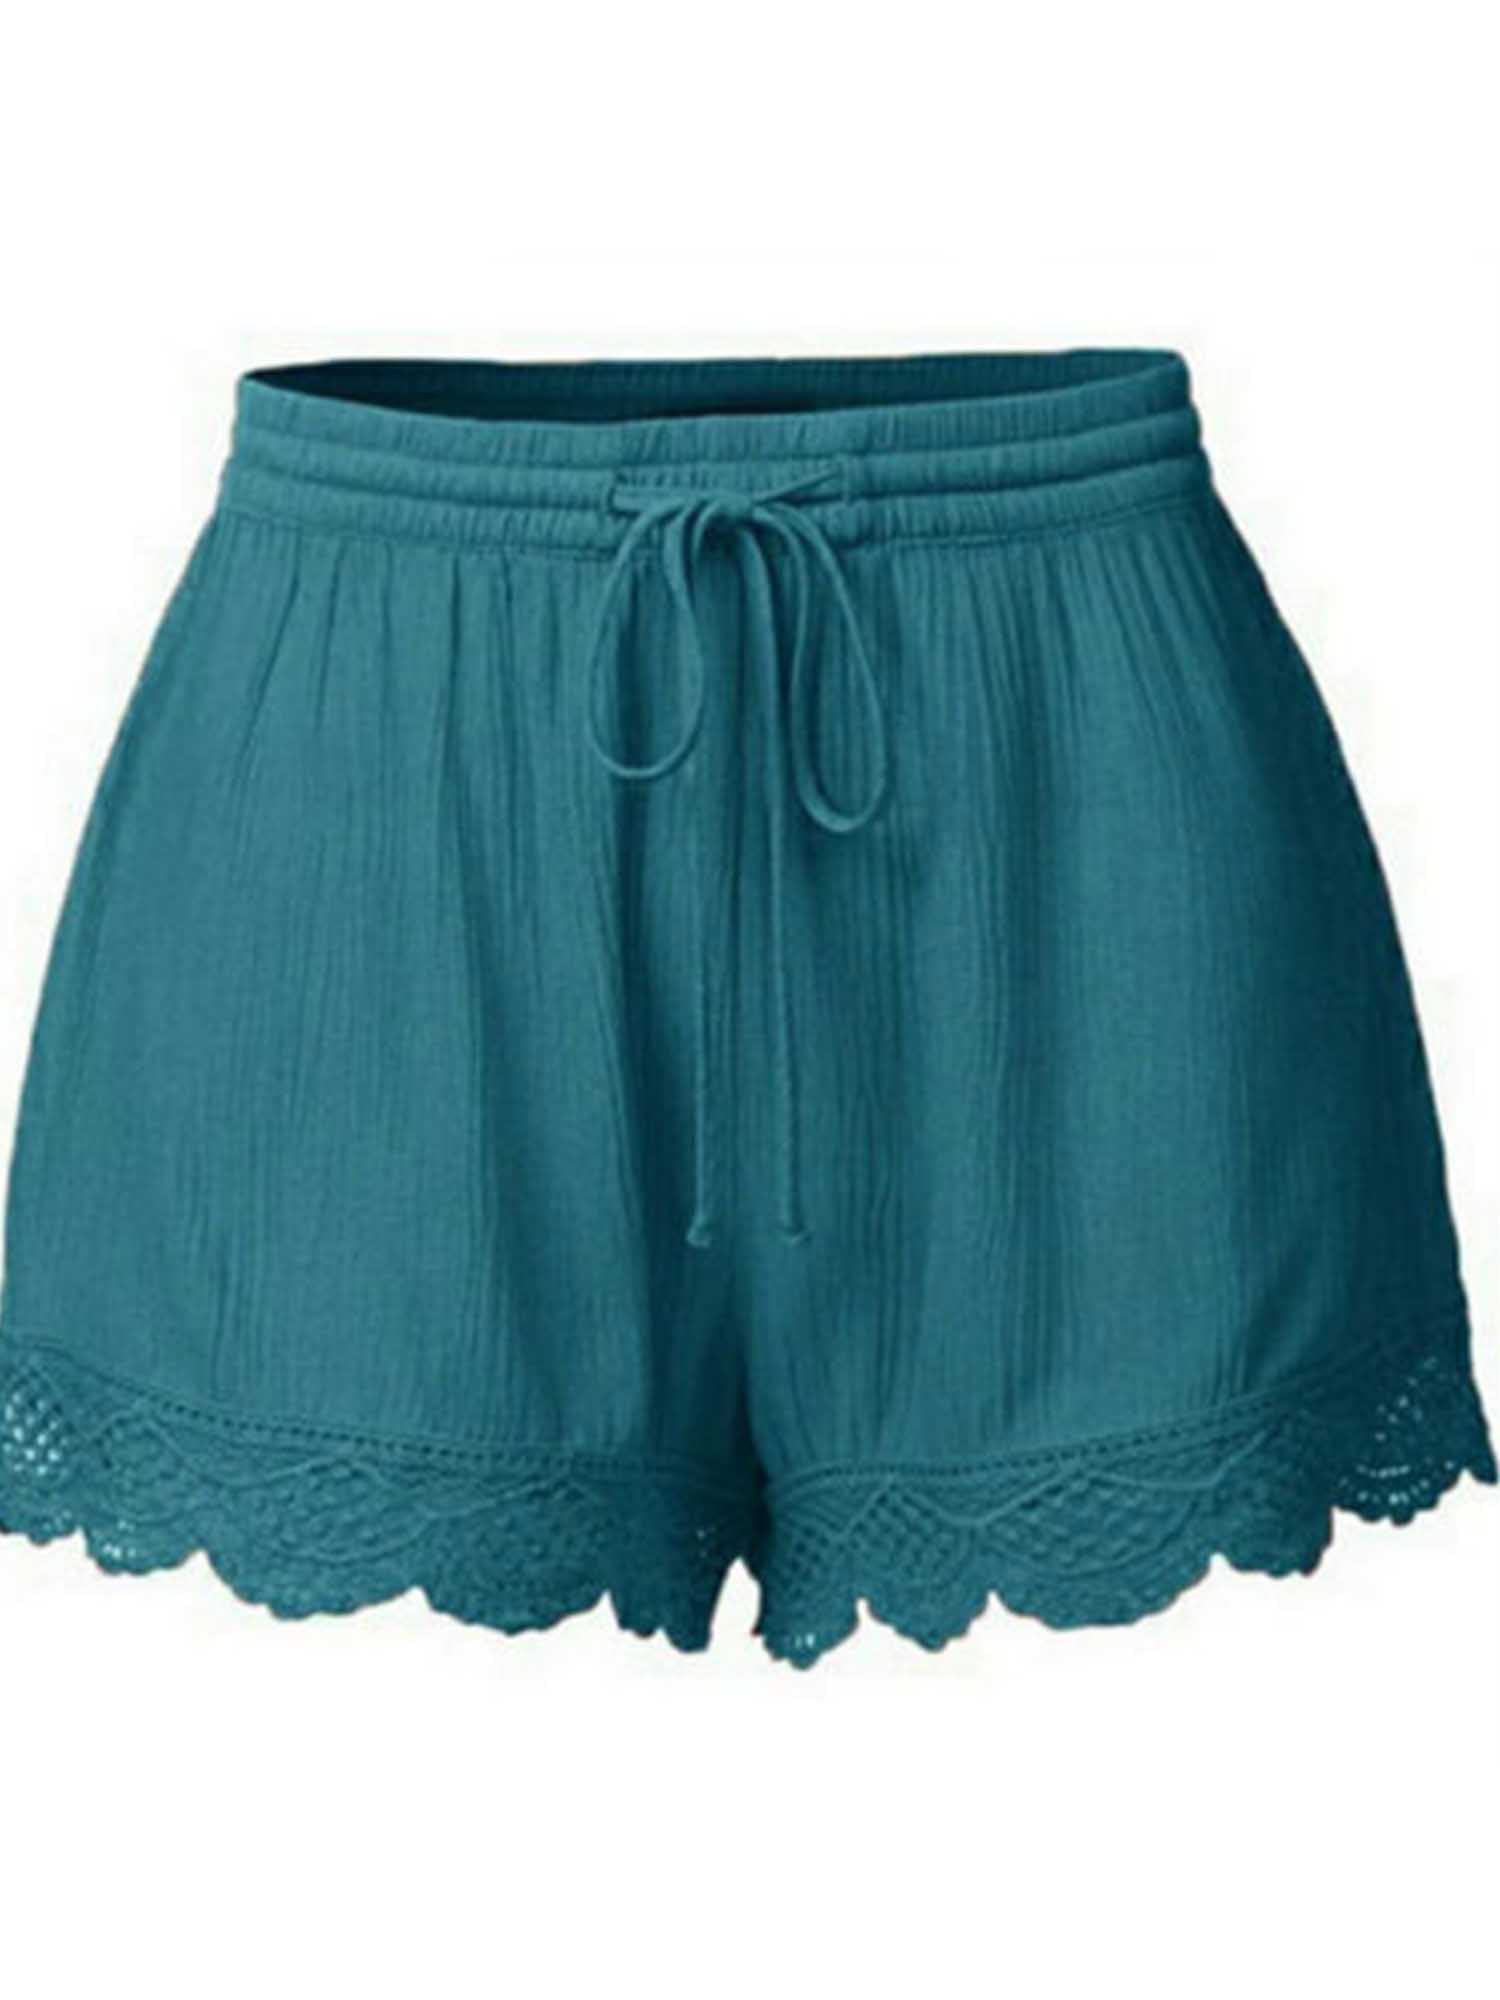 Pudcoco Summer Beach Shorts Linen Women High Waist Plus Loose Sports ...